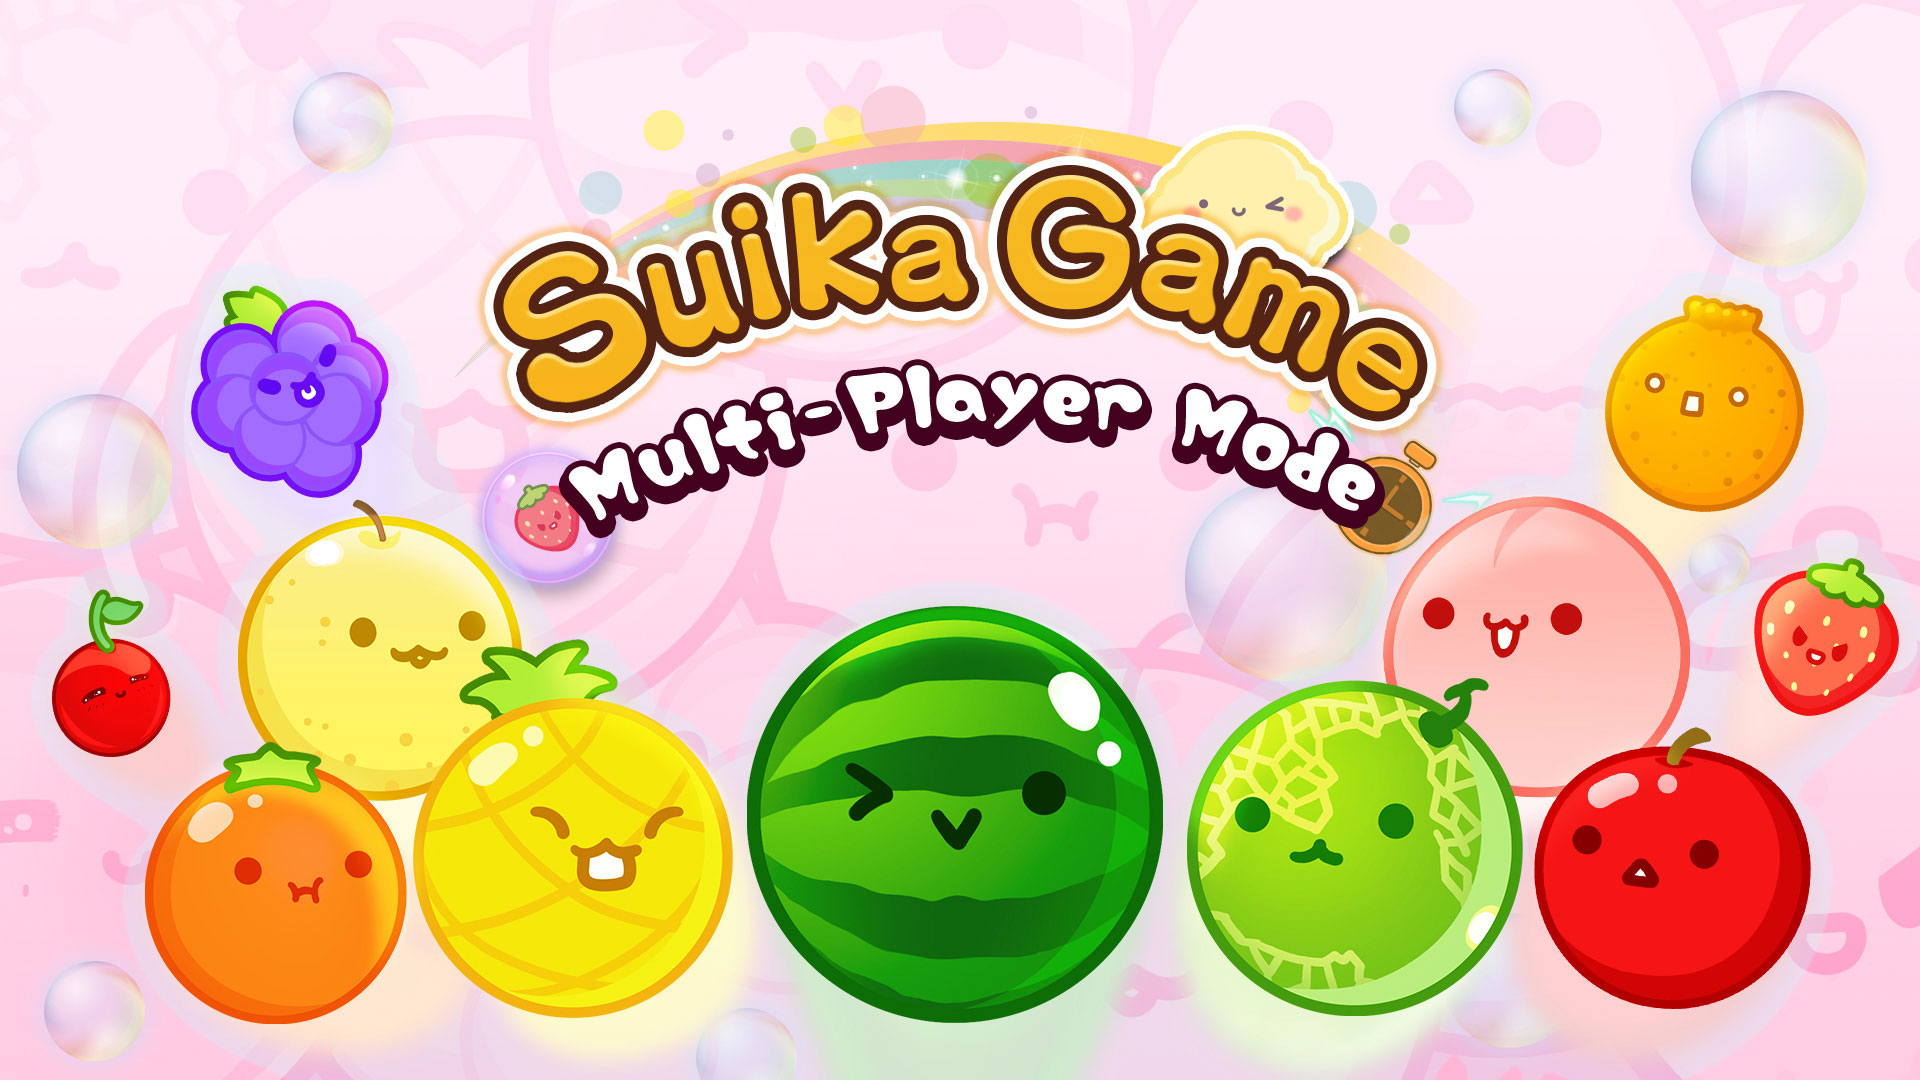 Suika Game Multi-Player Mode Expansion DLC